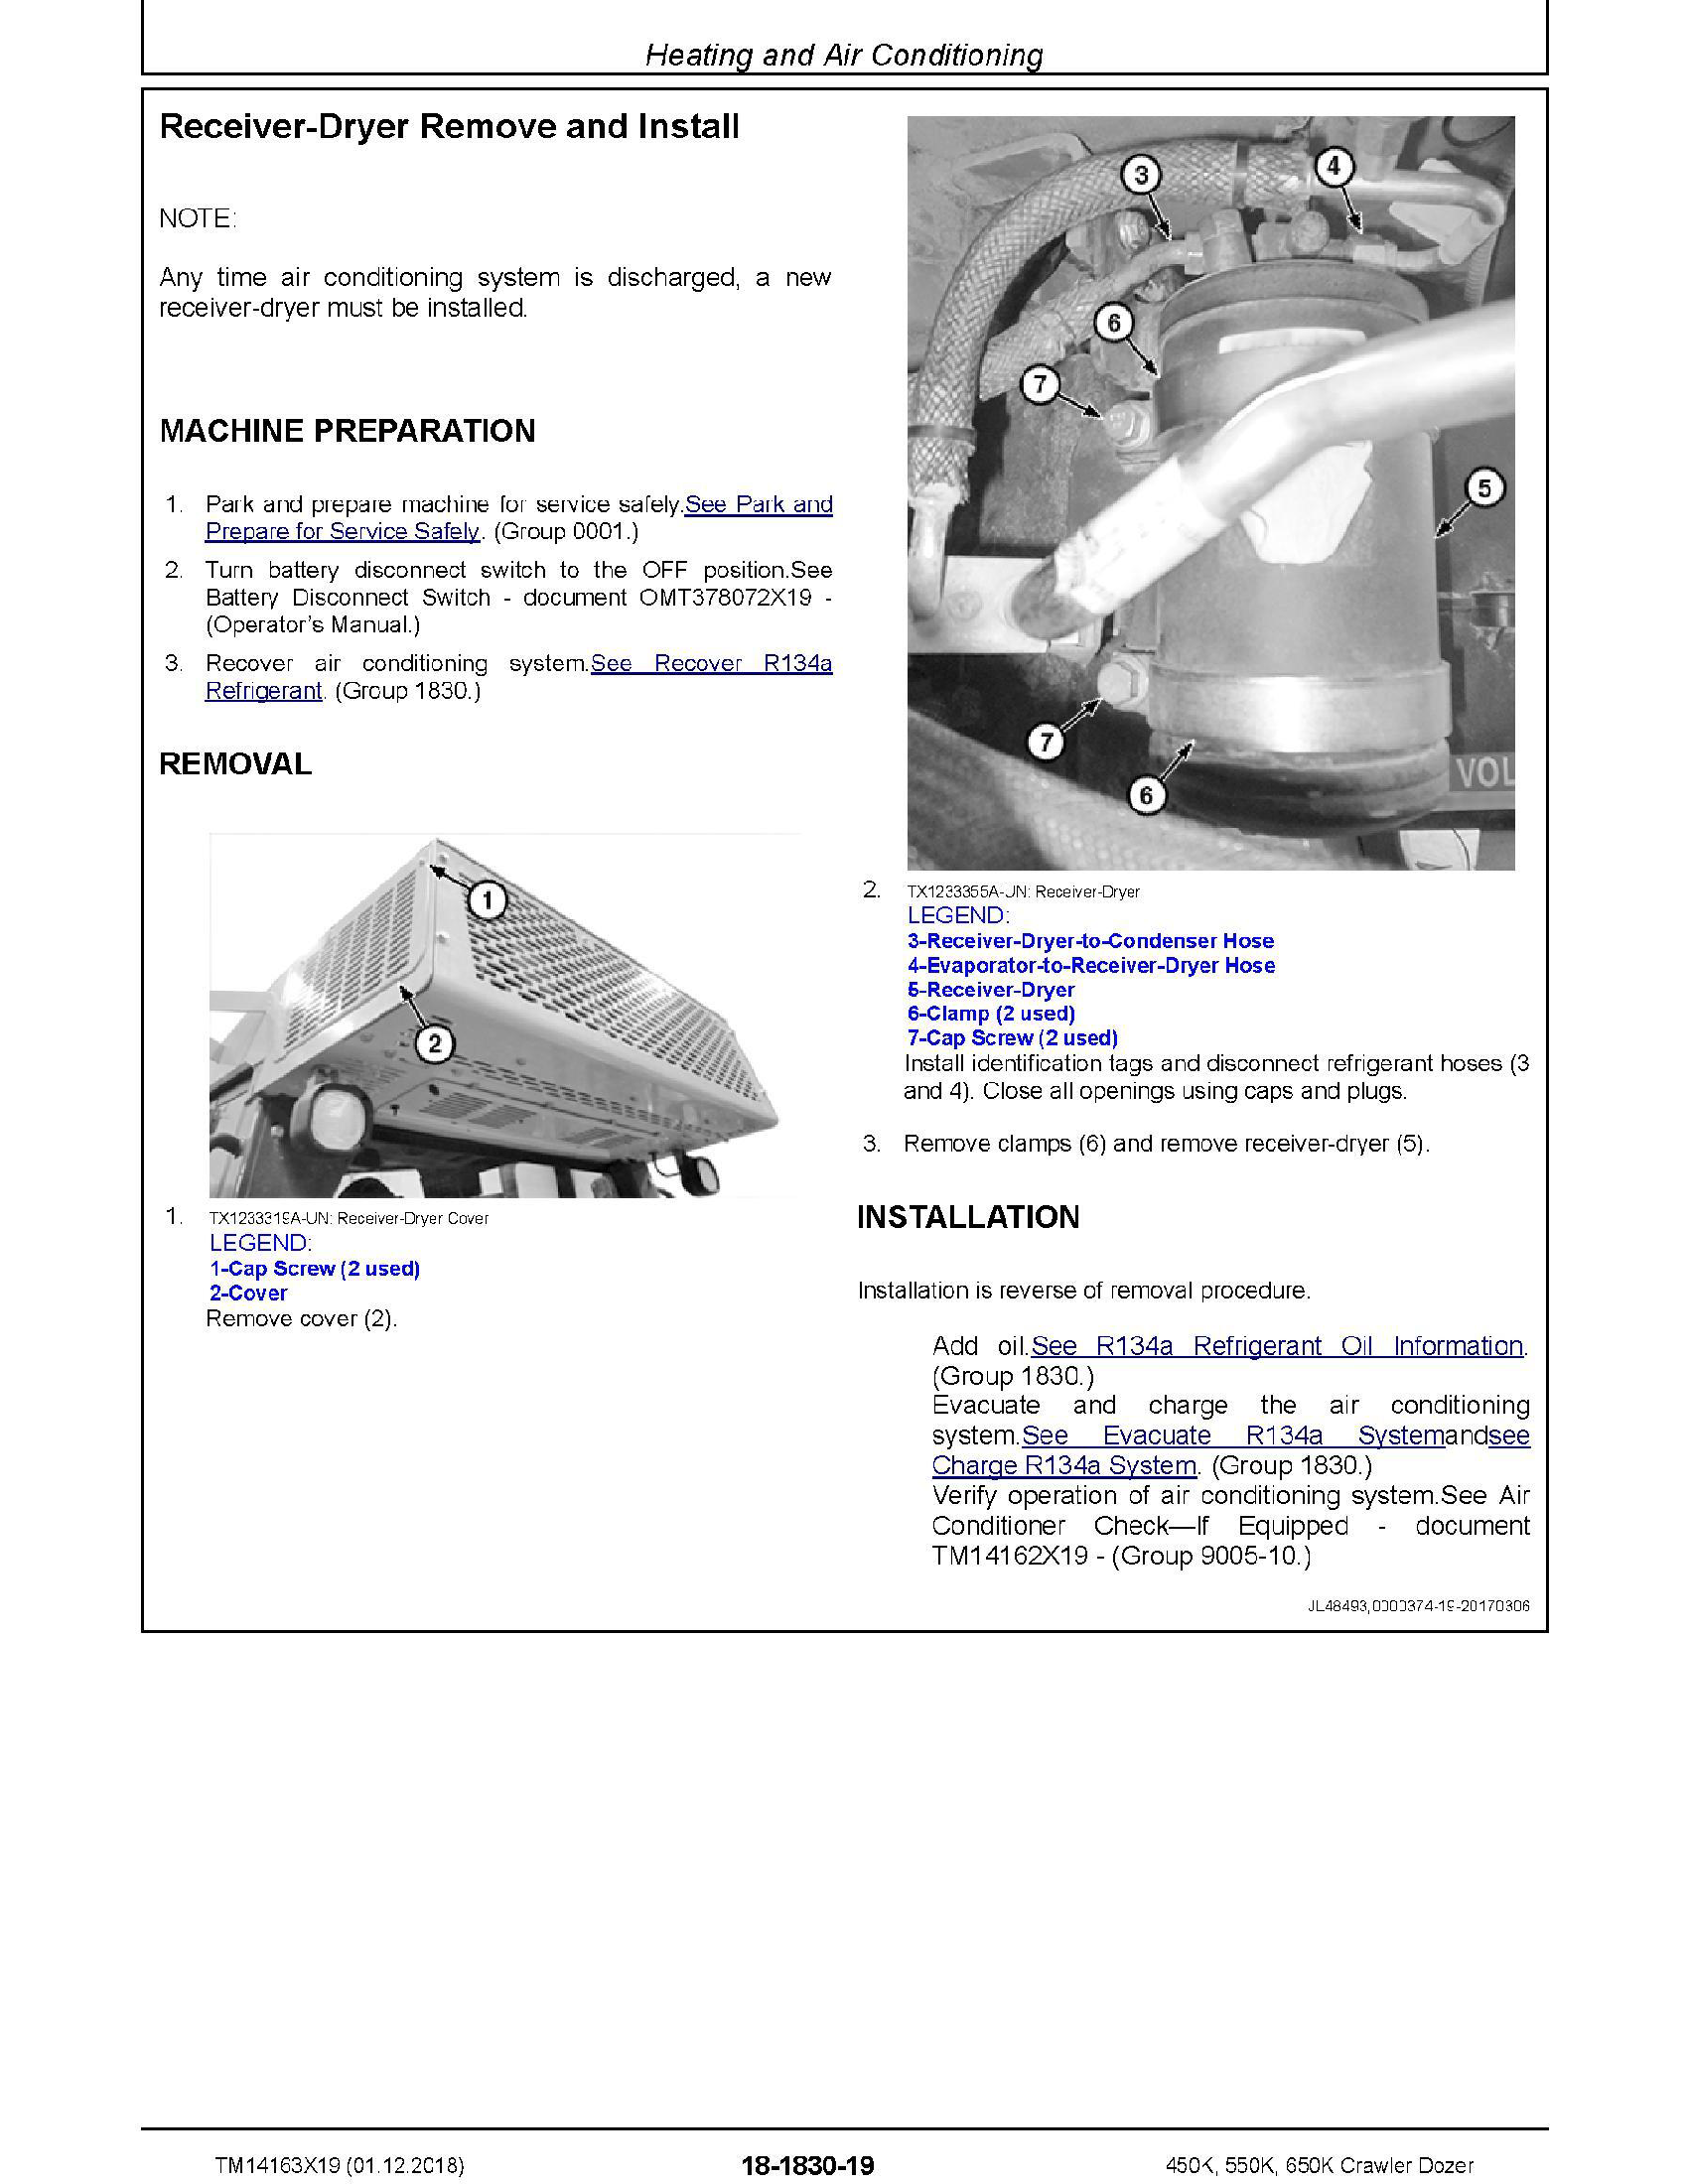 John Deere 1T0650KK manual